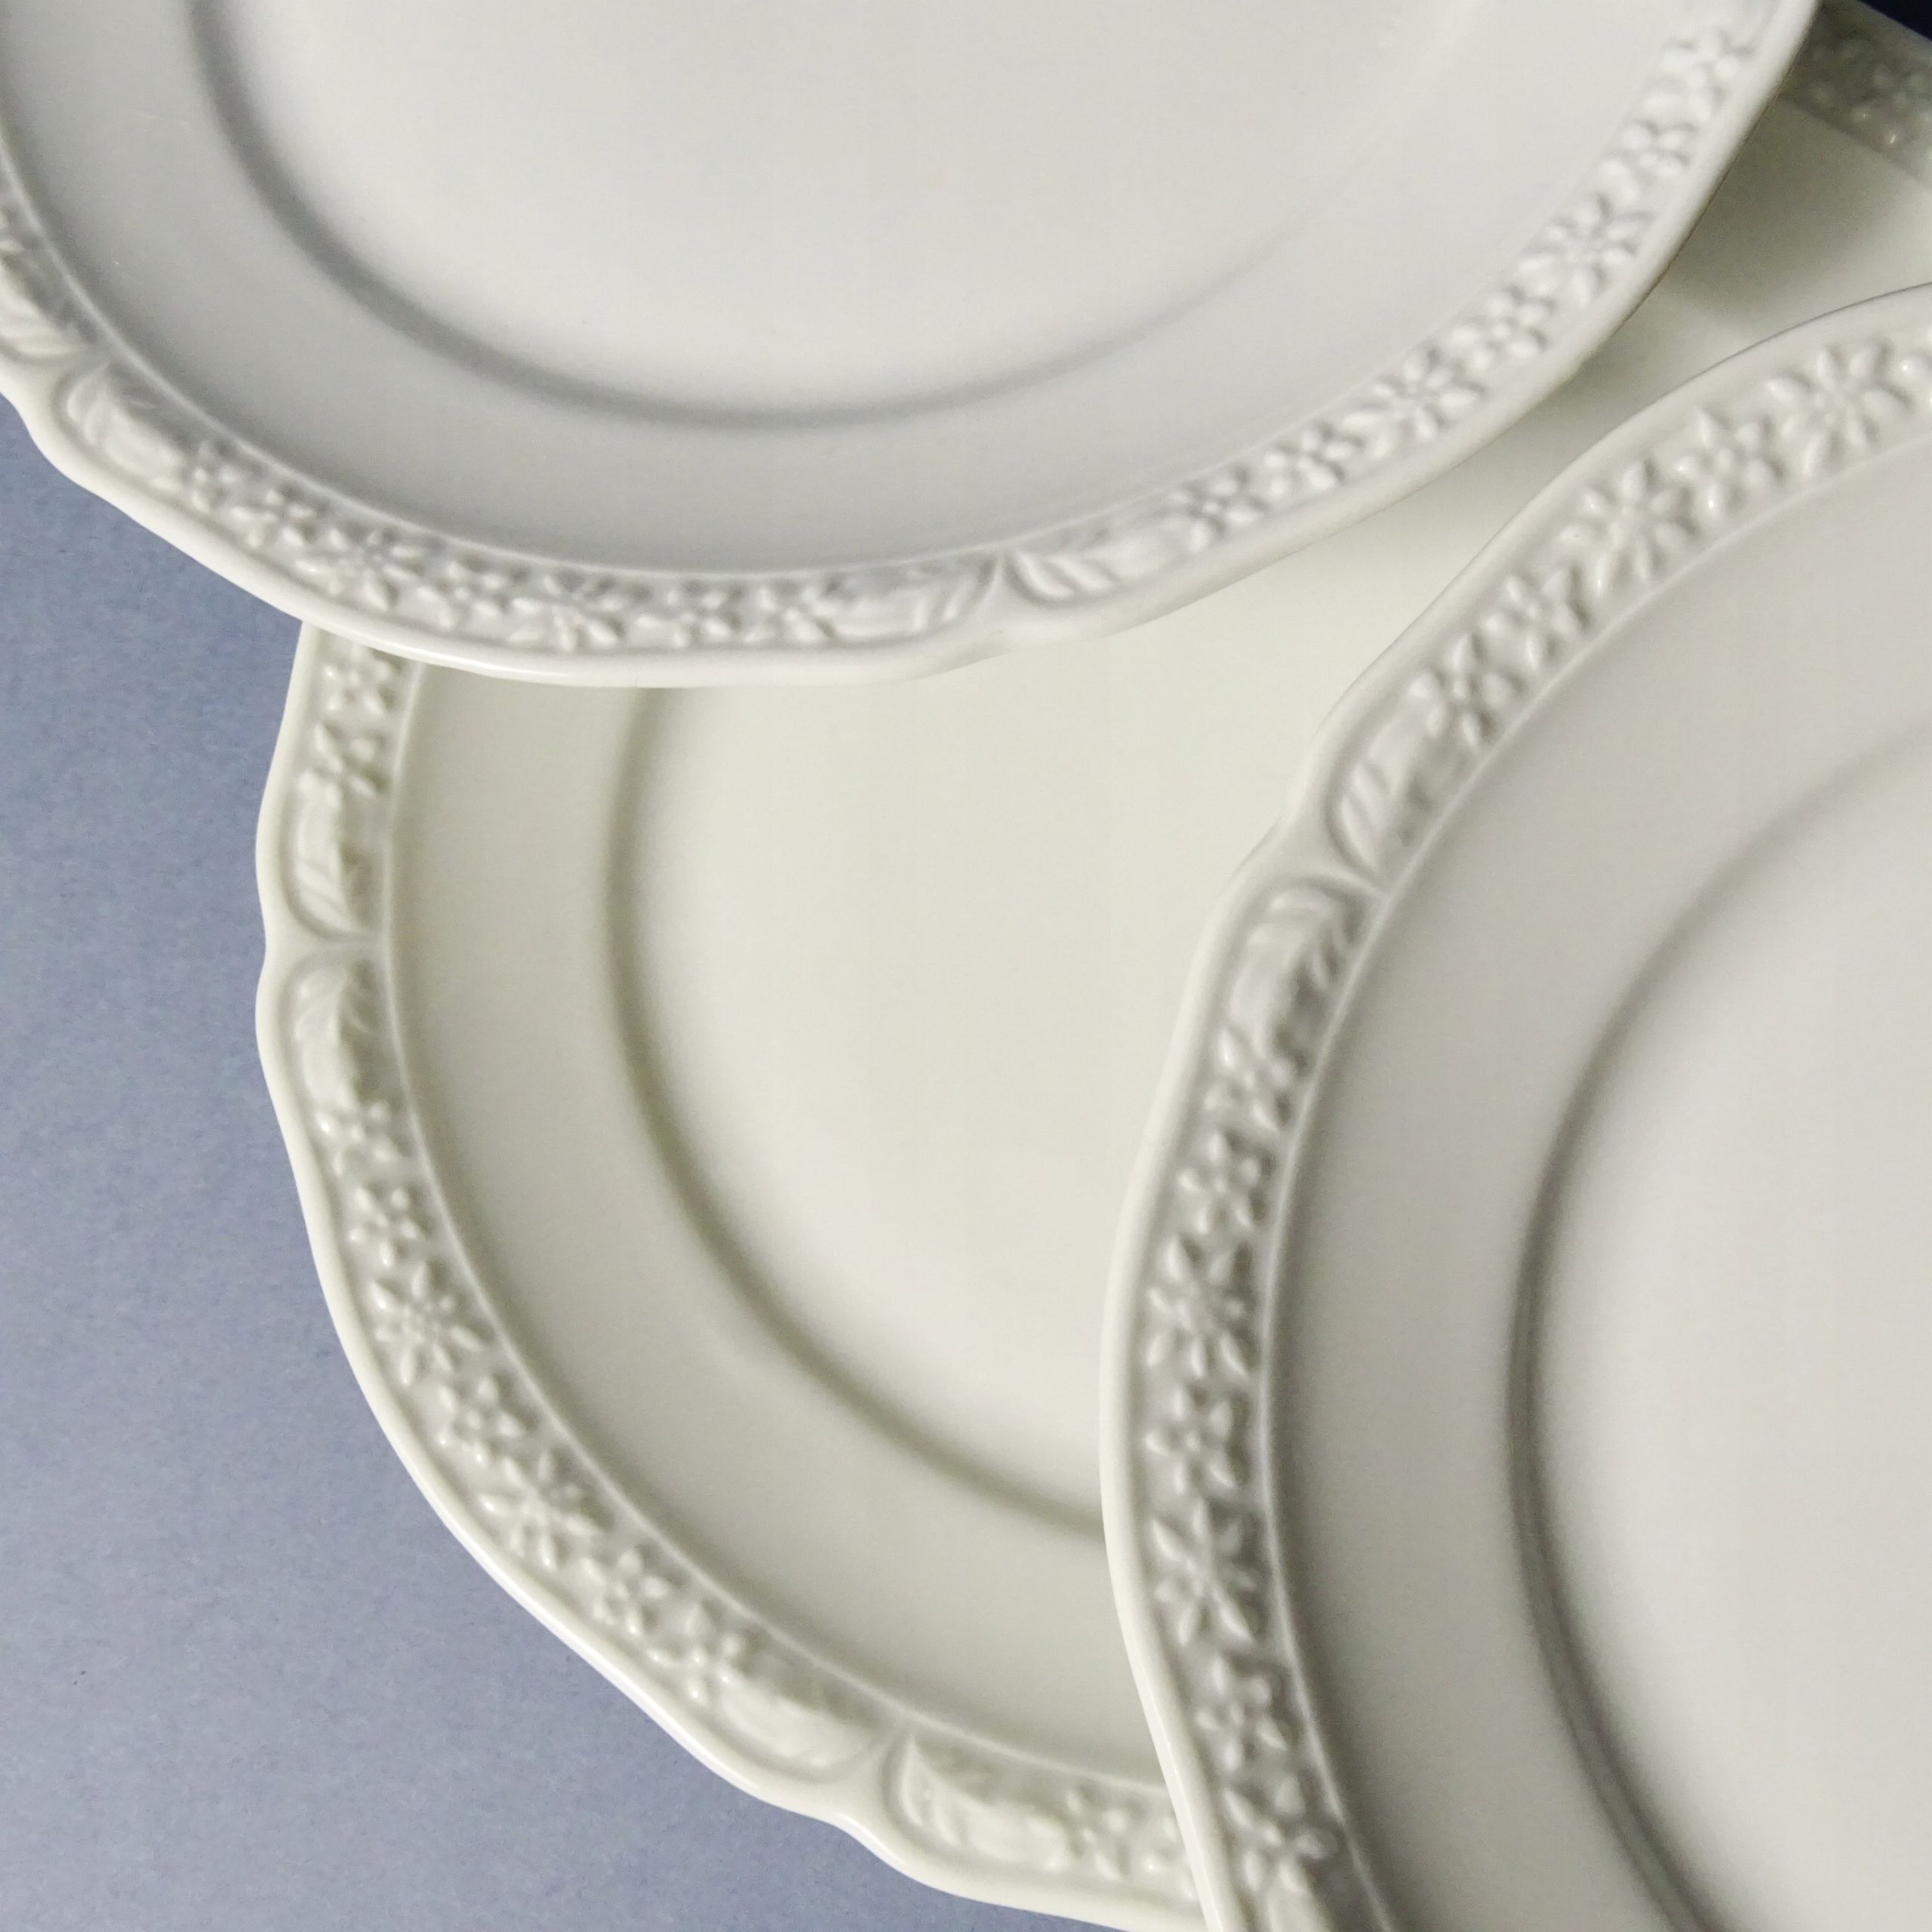 piękne białe zabytkowe talerzyki porcelanowe